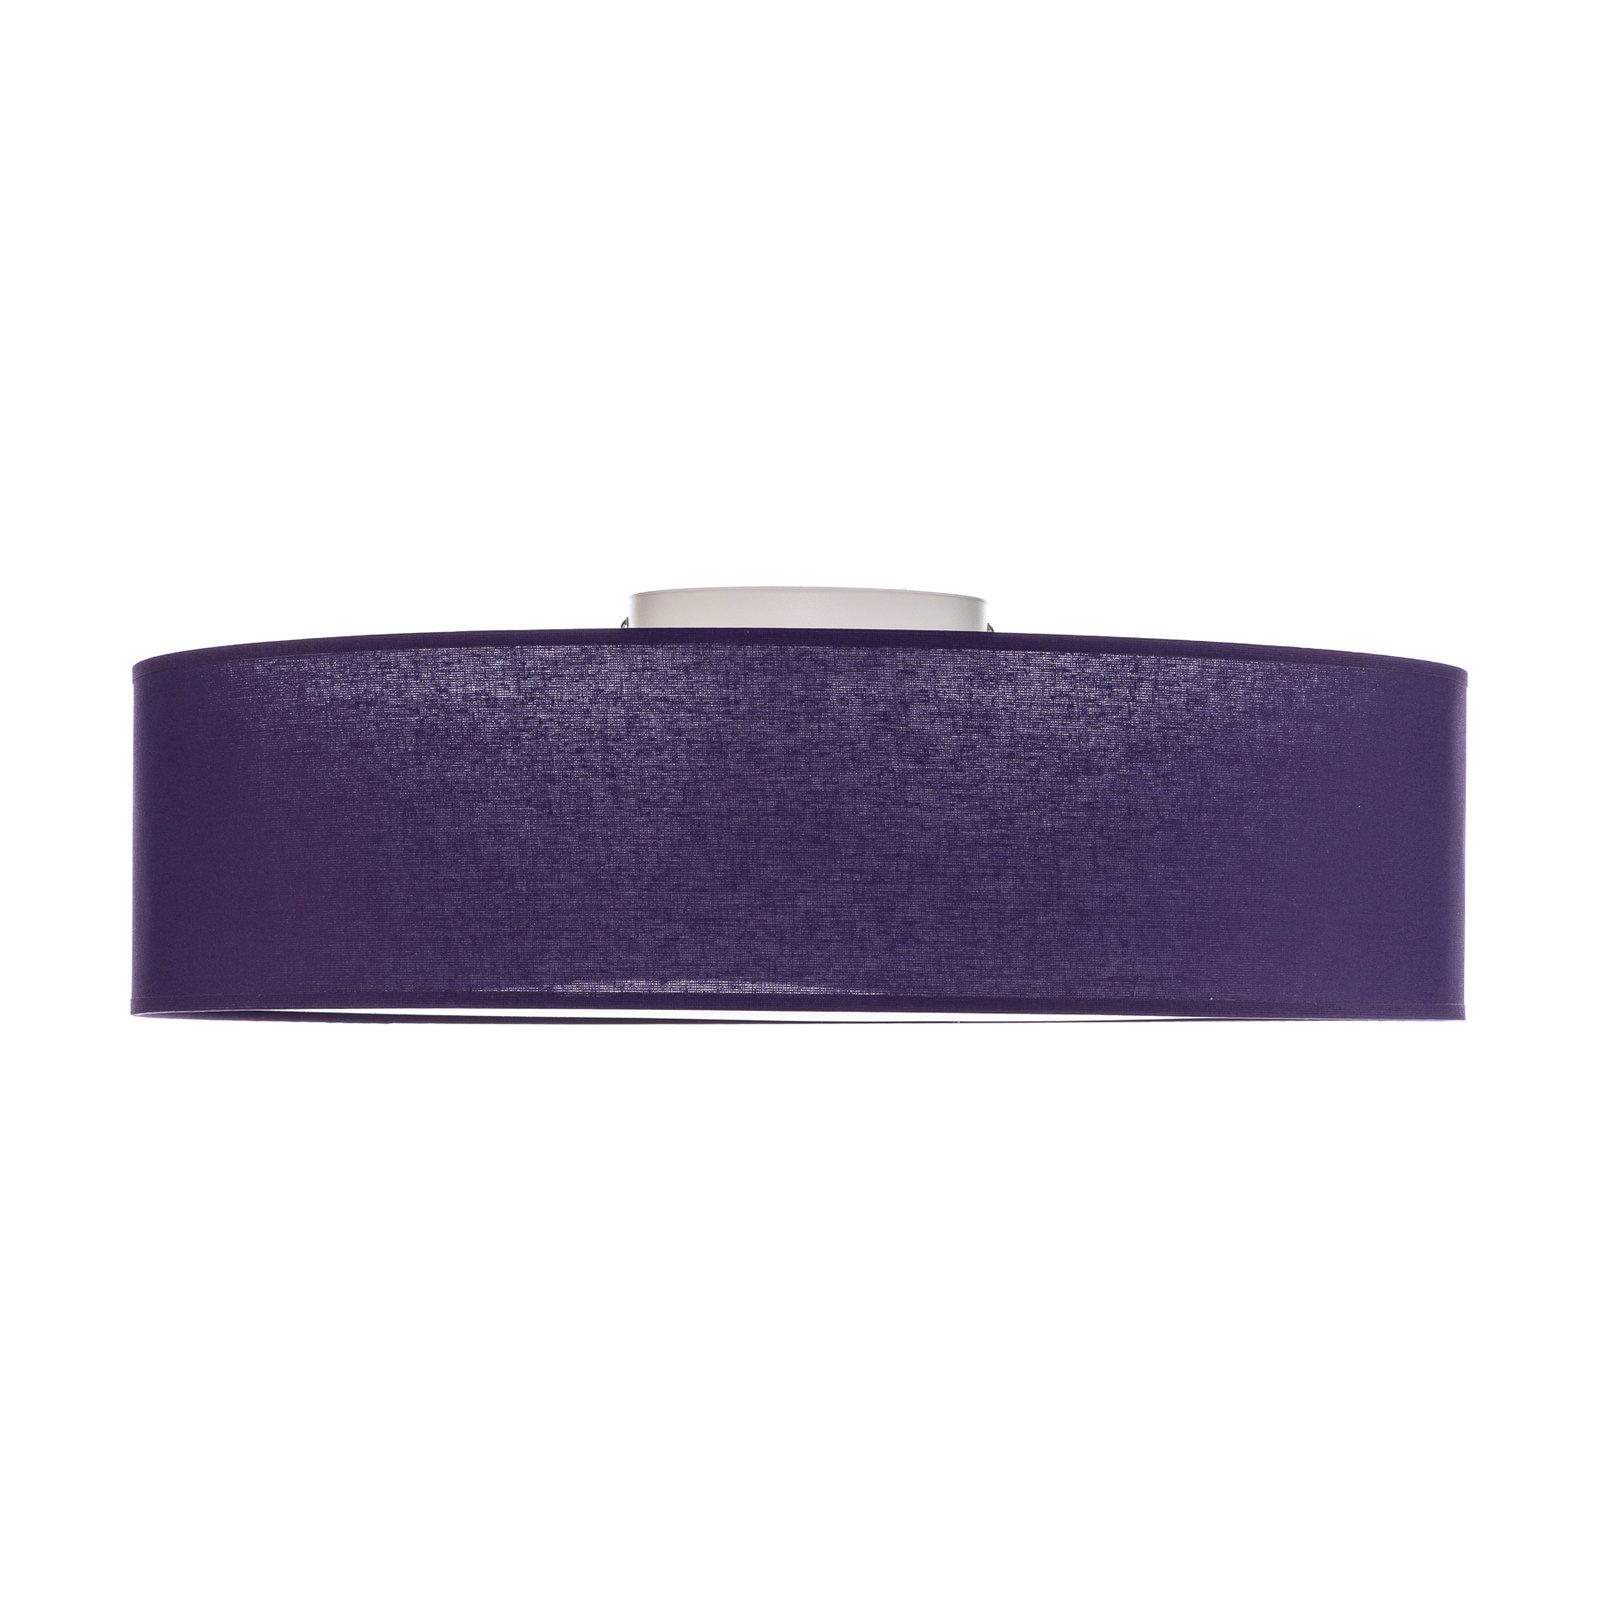 Euluna Deck, stoffen schaduw violet, Ø 50 cm